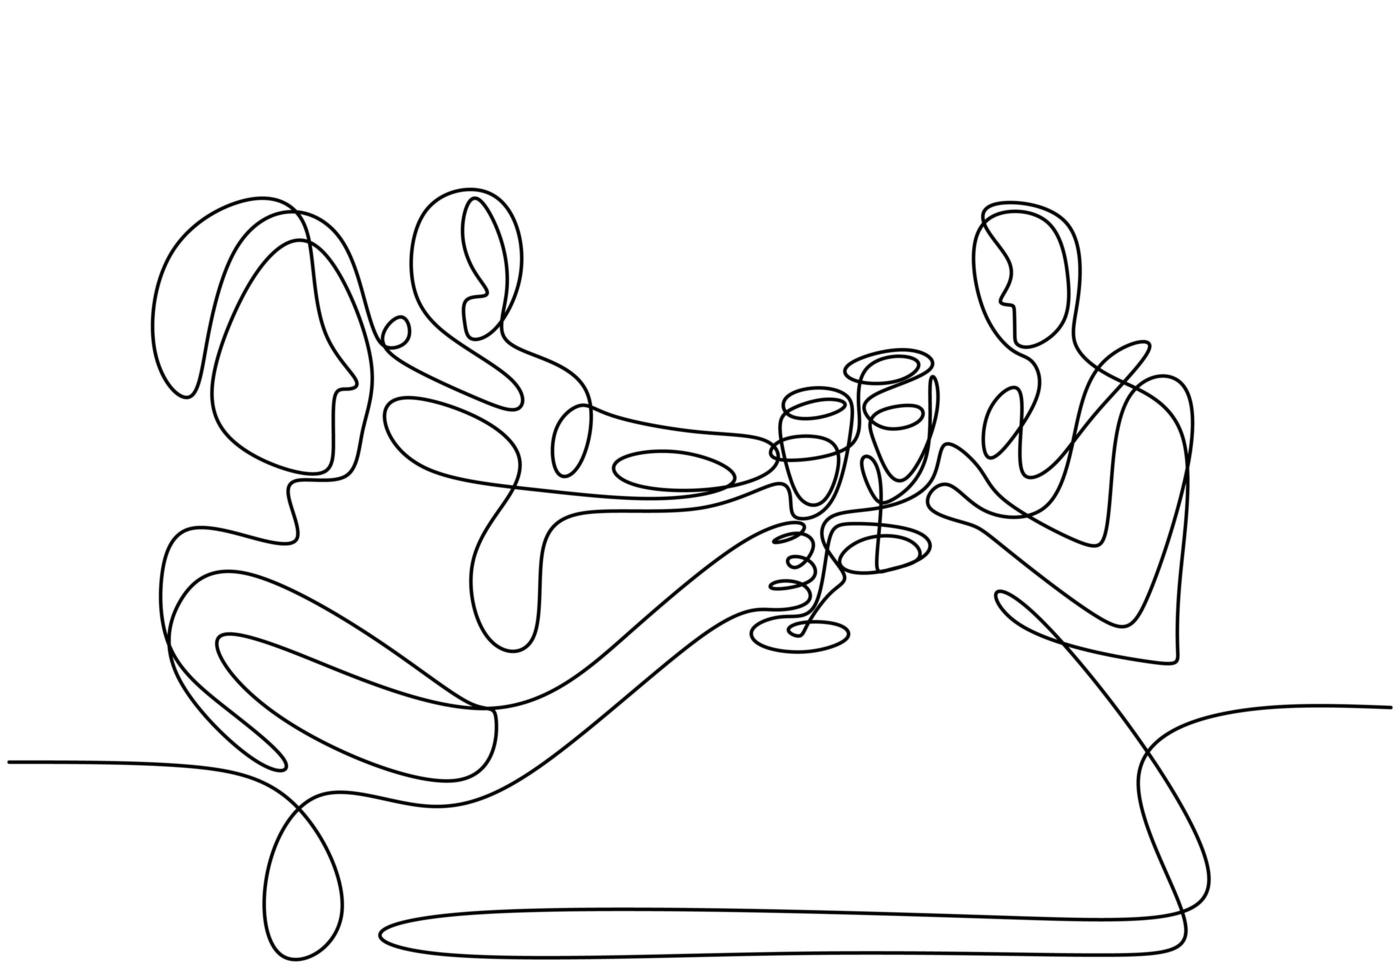 continu een lijntekening, vector van groepsmensen juichen met glazen wijn of champagne. man en vrouw in feestviering. minimalisme ontwerp met eenvoud geïsoleerd op een witte achtergrond.